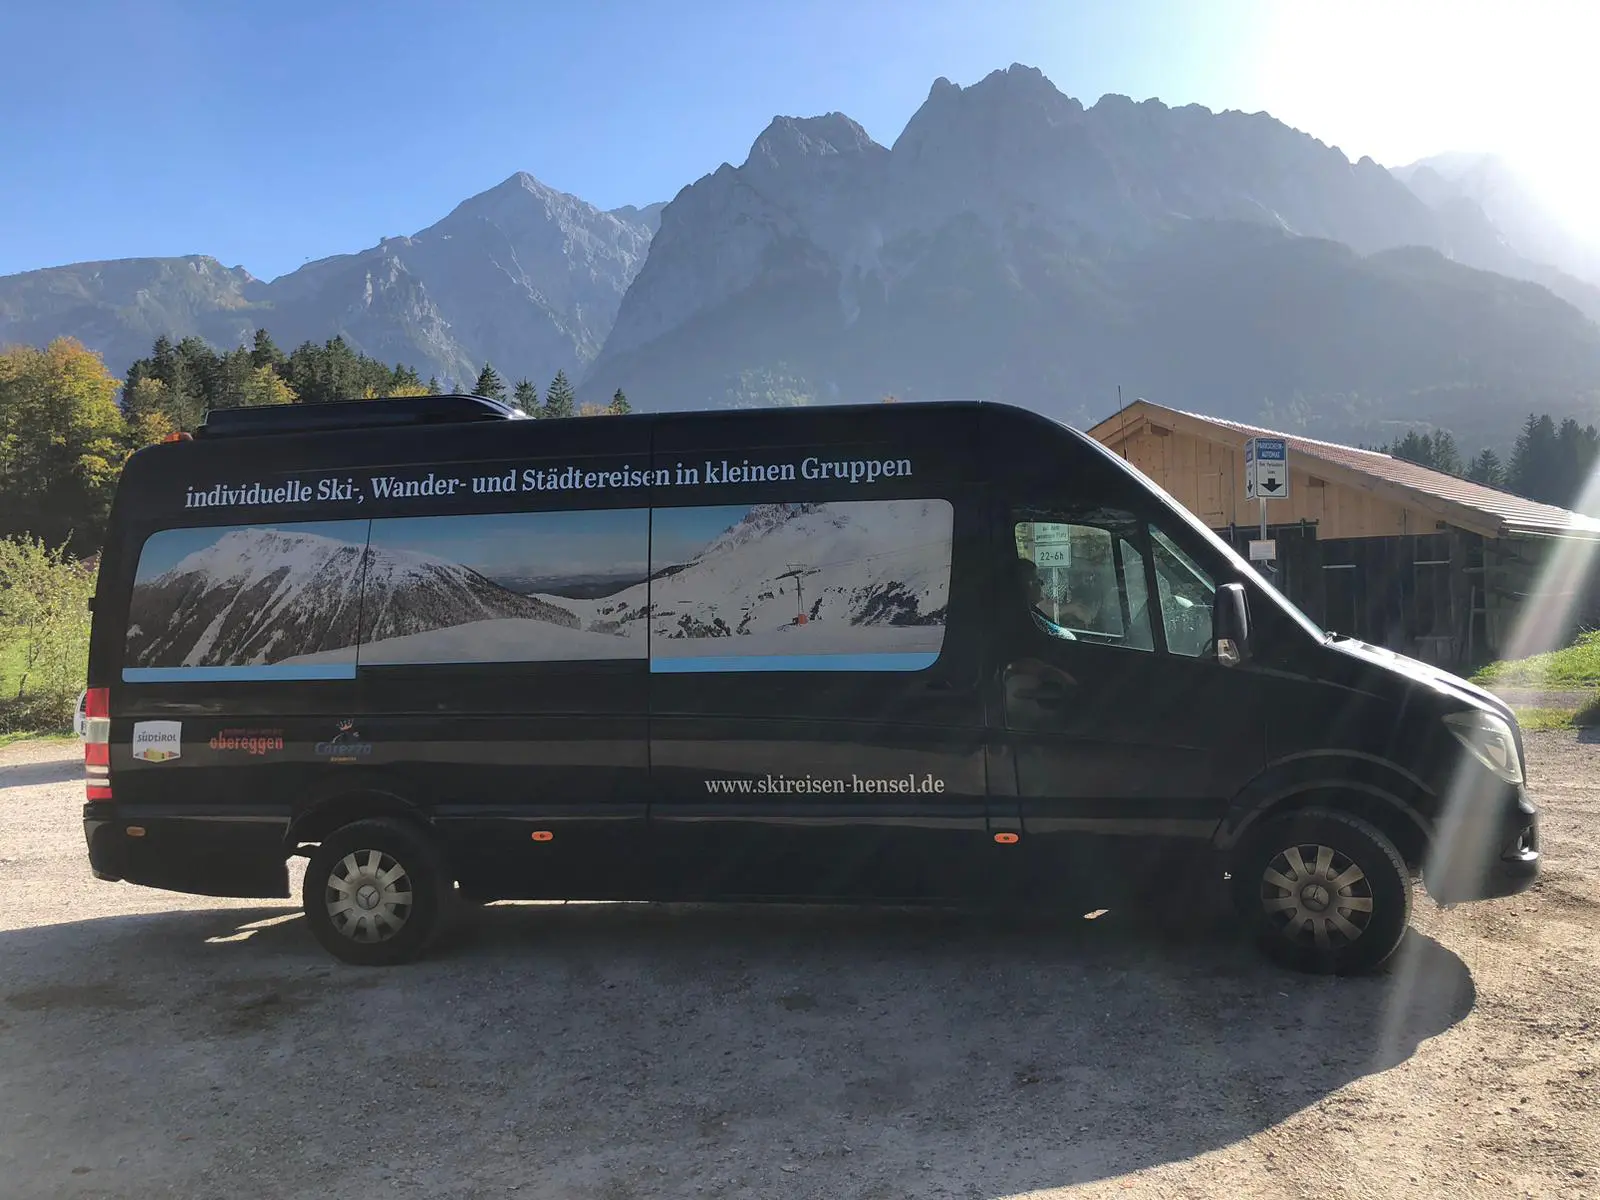 Reisedienst Hensel in Seebergen Thüringen für Ski- und Wanderreisen